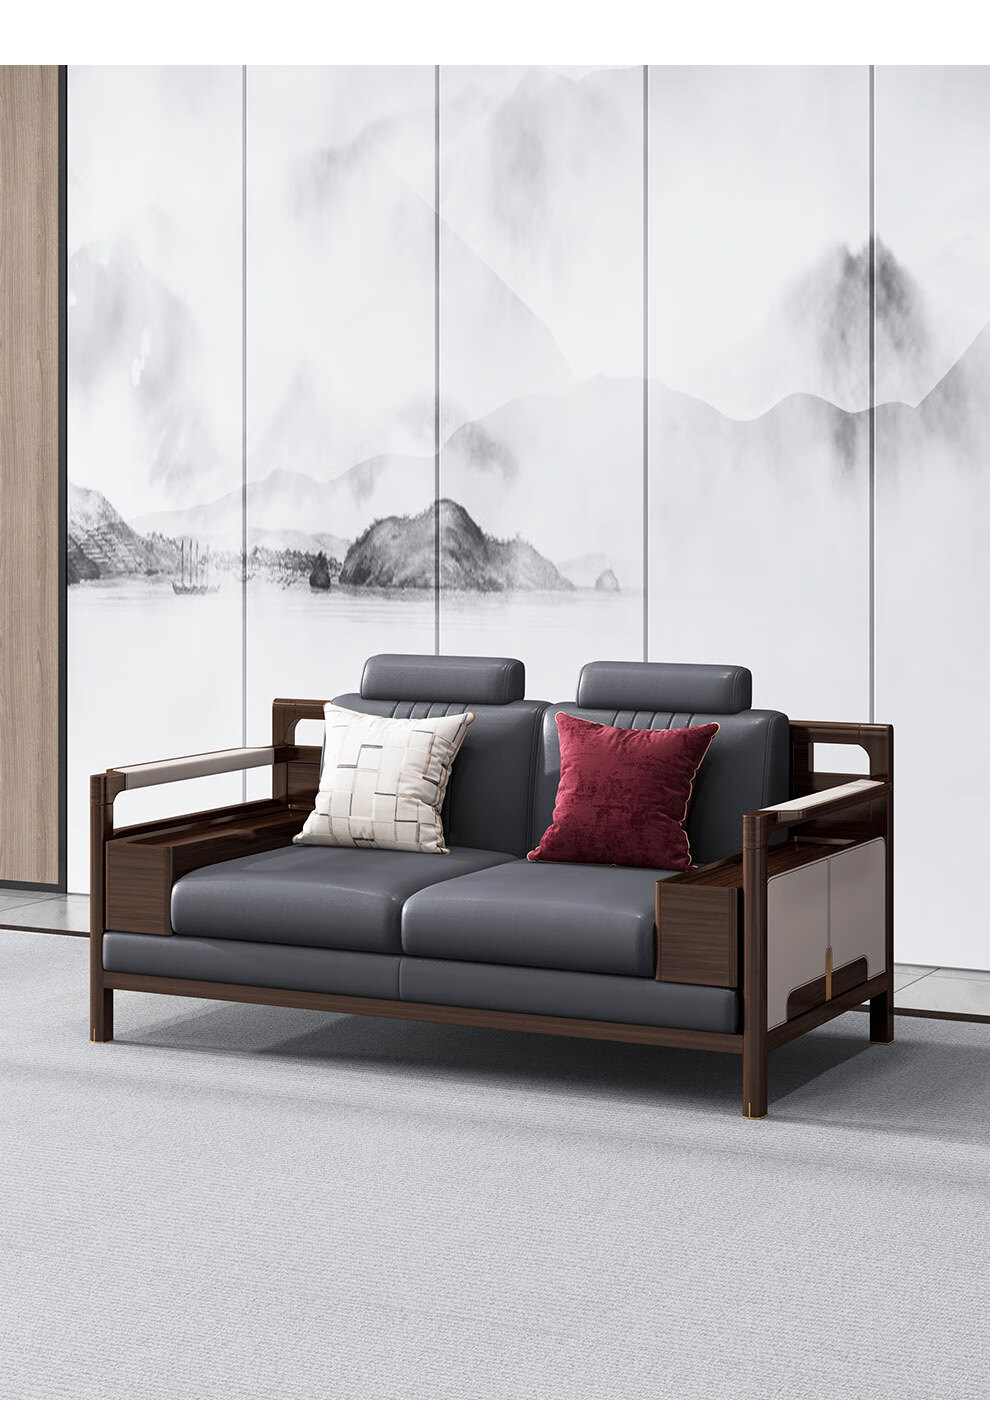 怡品天缘 实木沙发 新中式沙发组合 乌金檀木现代禅意别墅客厅家具